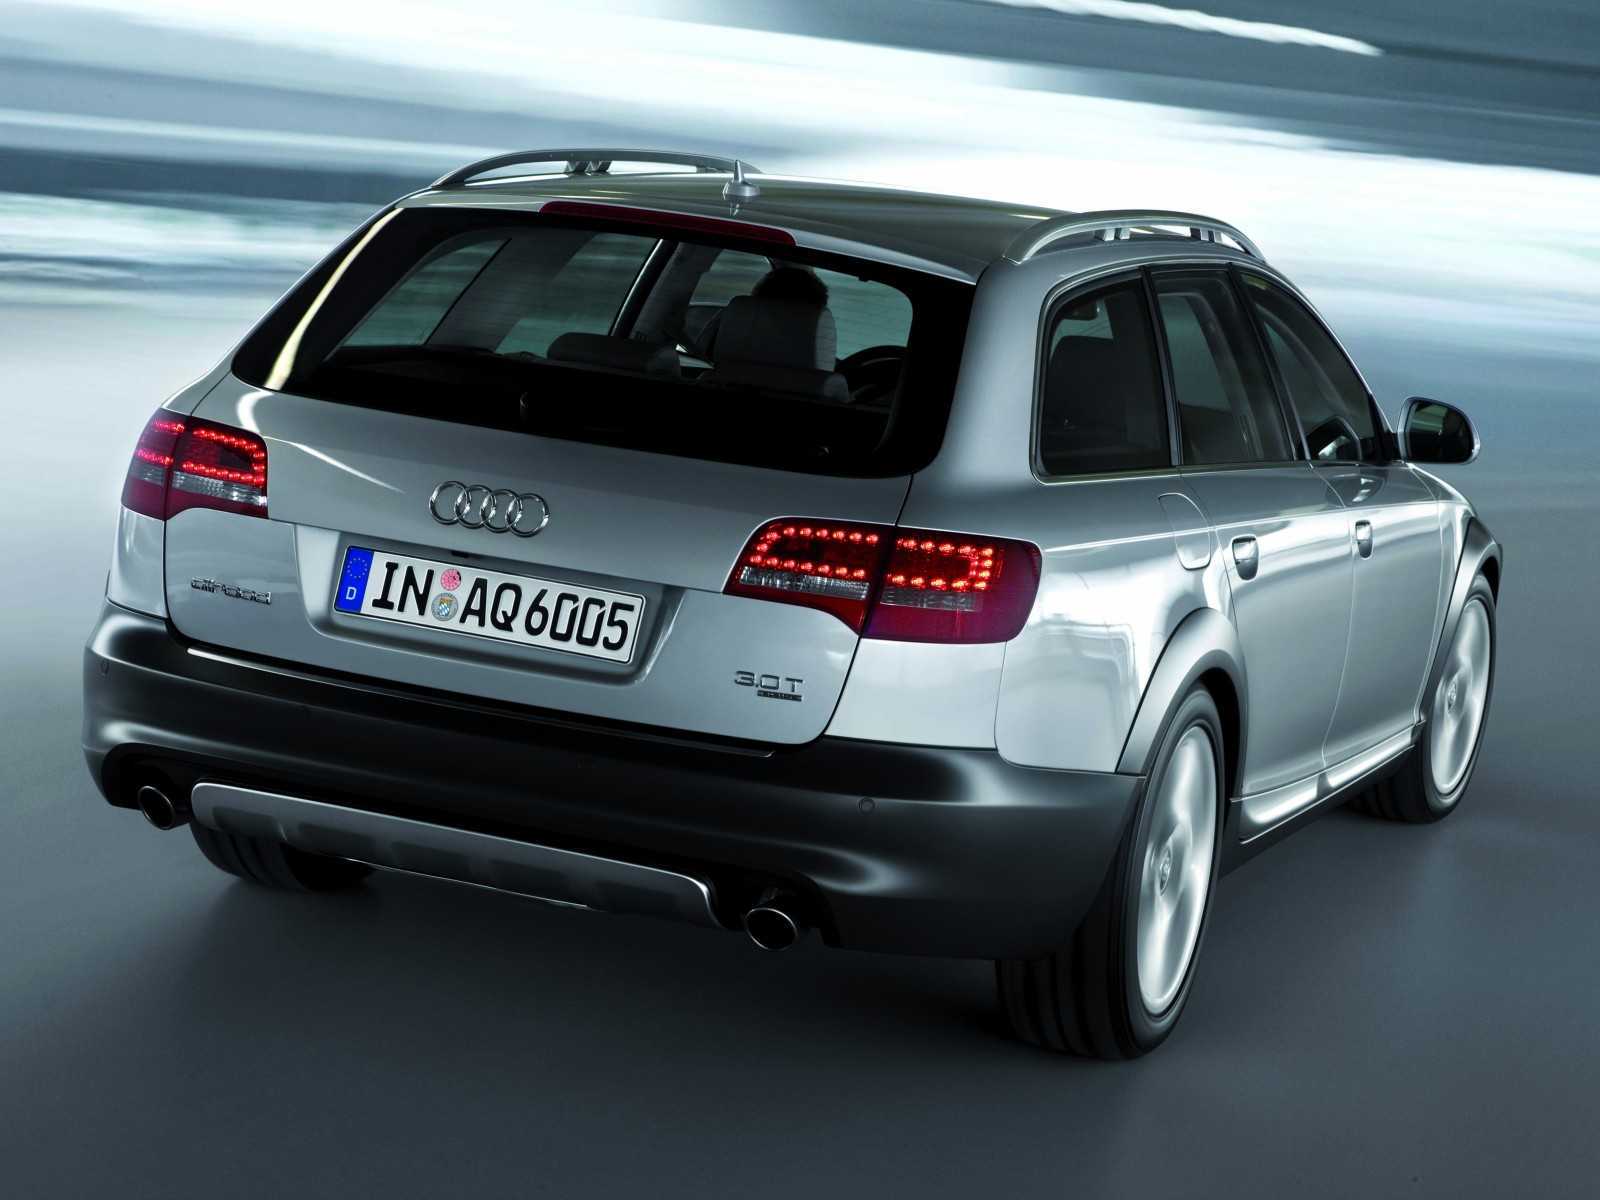 Audi a6 allroad quattro 2.7, 3.0, 4.2 реальные отзывы о расходе топлива: бензина на механике и автомате (робот)